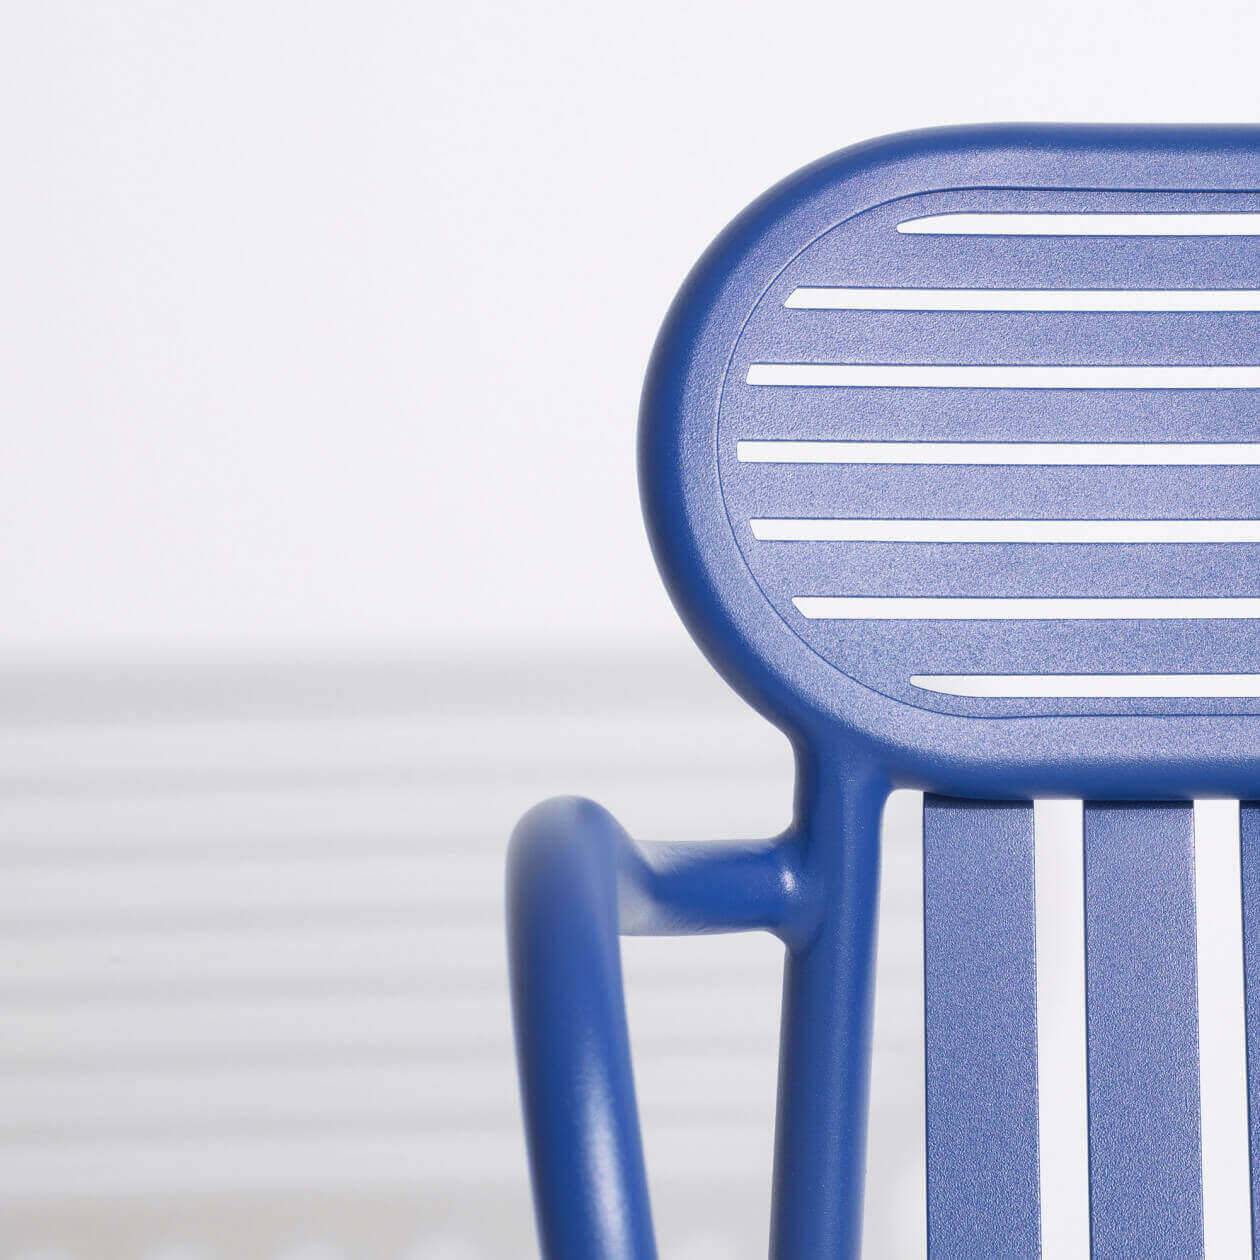 Week-End Gartenstuhl mit Armlehne in Blue präsentiert im Onlineshop von KAQTU Design AG. Gartenstuhl mit Armlehnen ist von Petite Friture